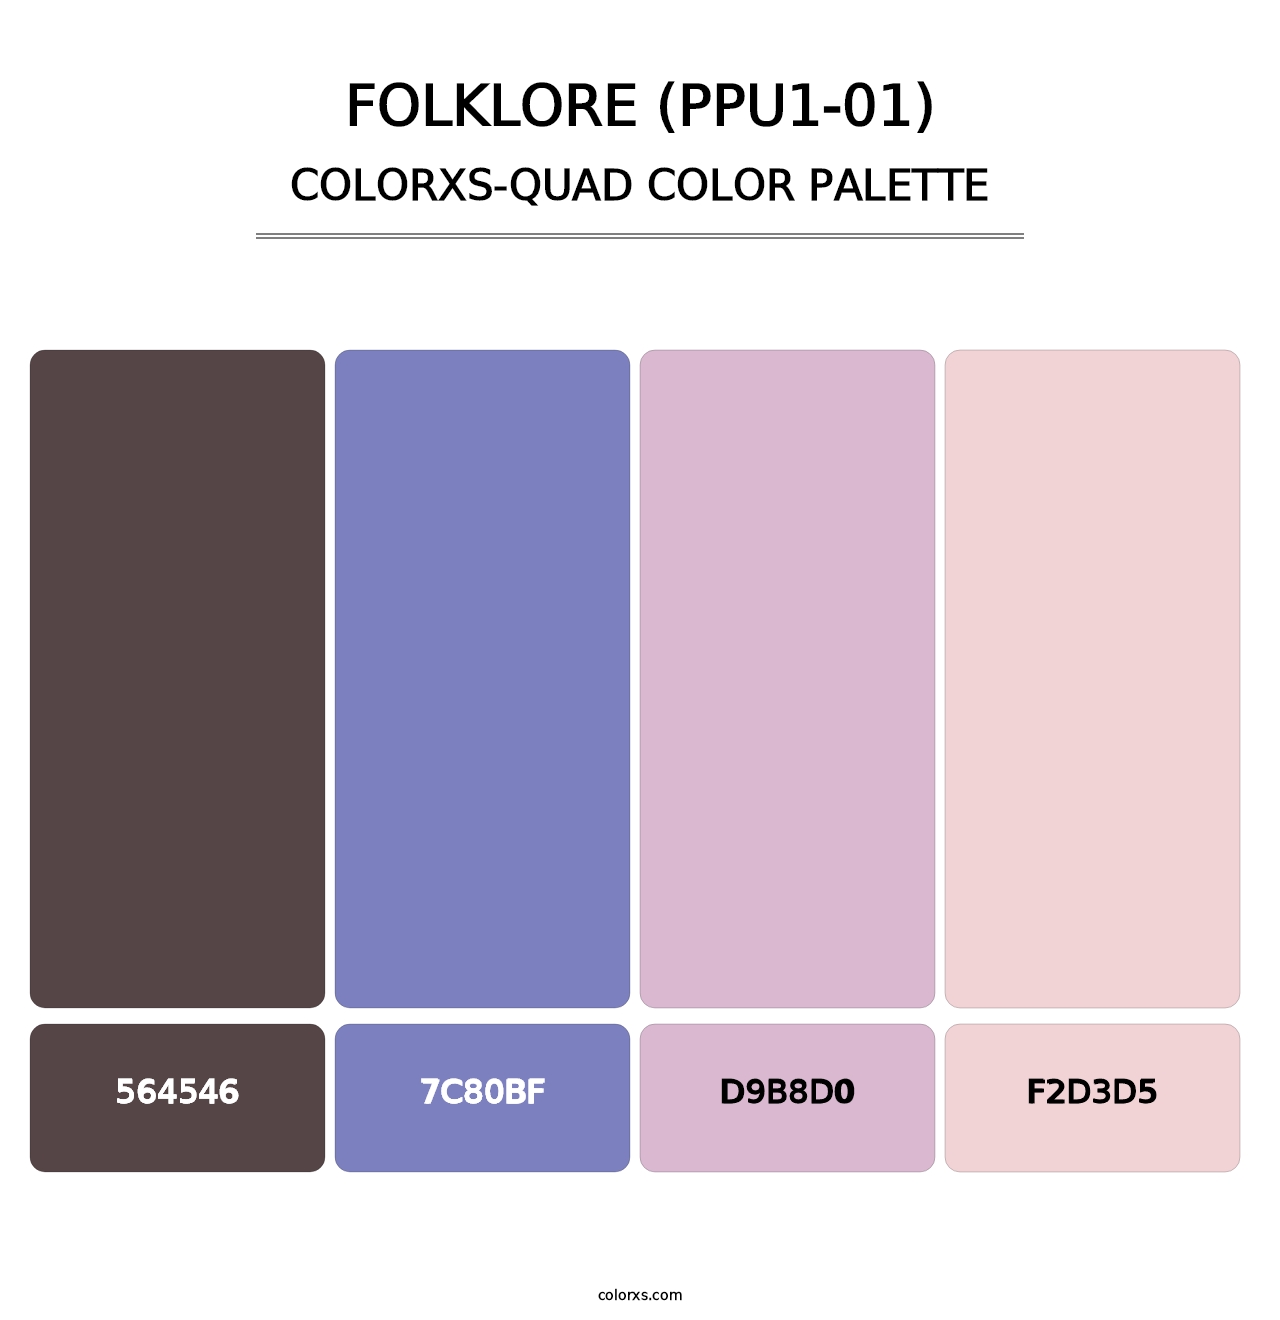 Folklore (PPU1-01) - Colorxs Quad Palette